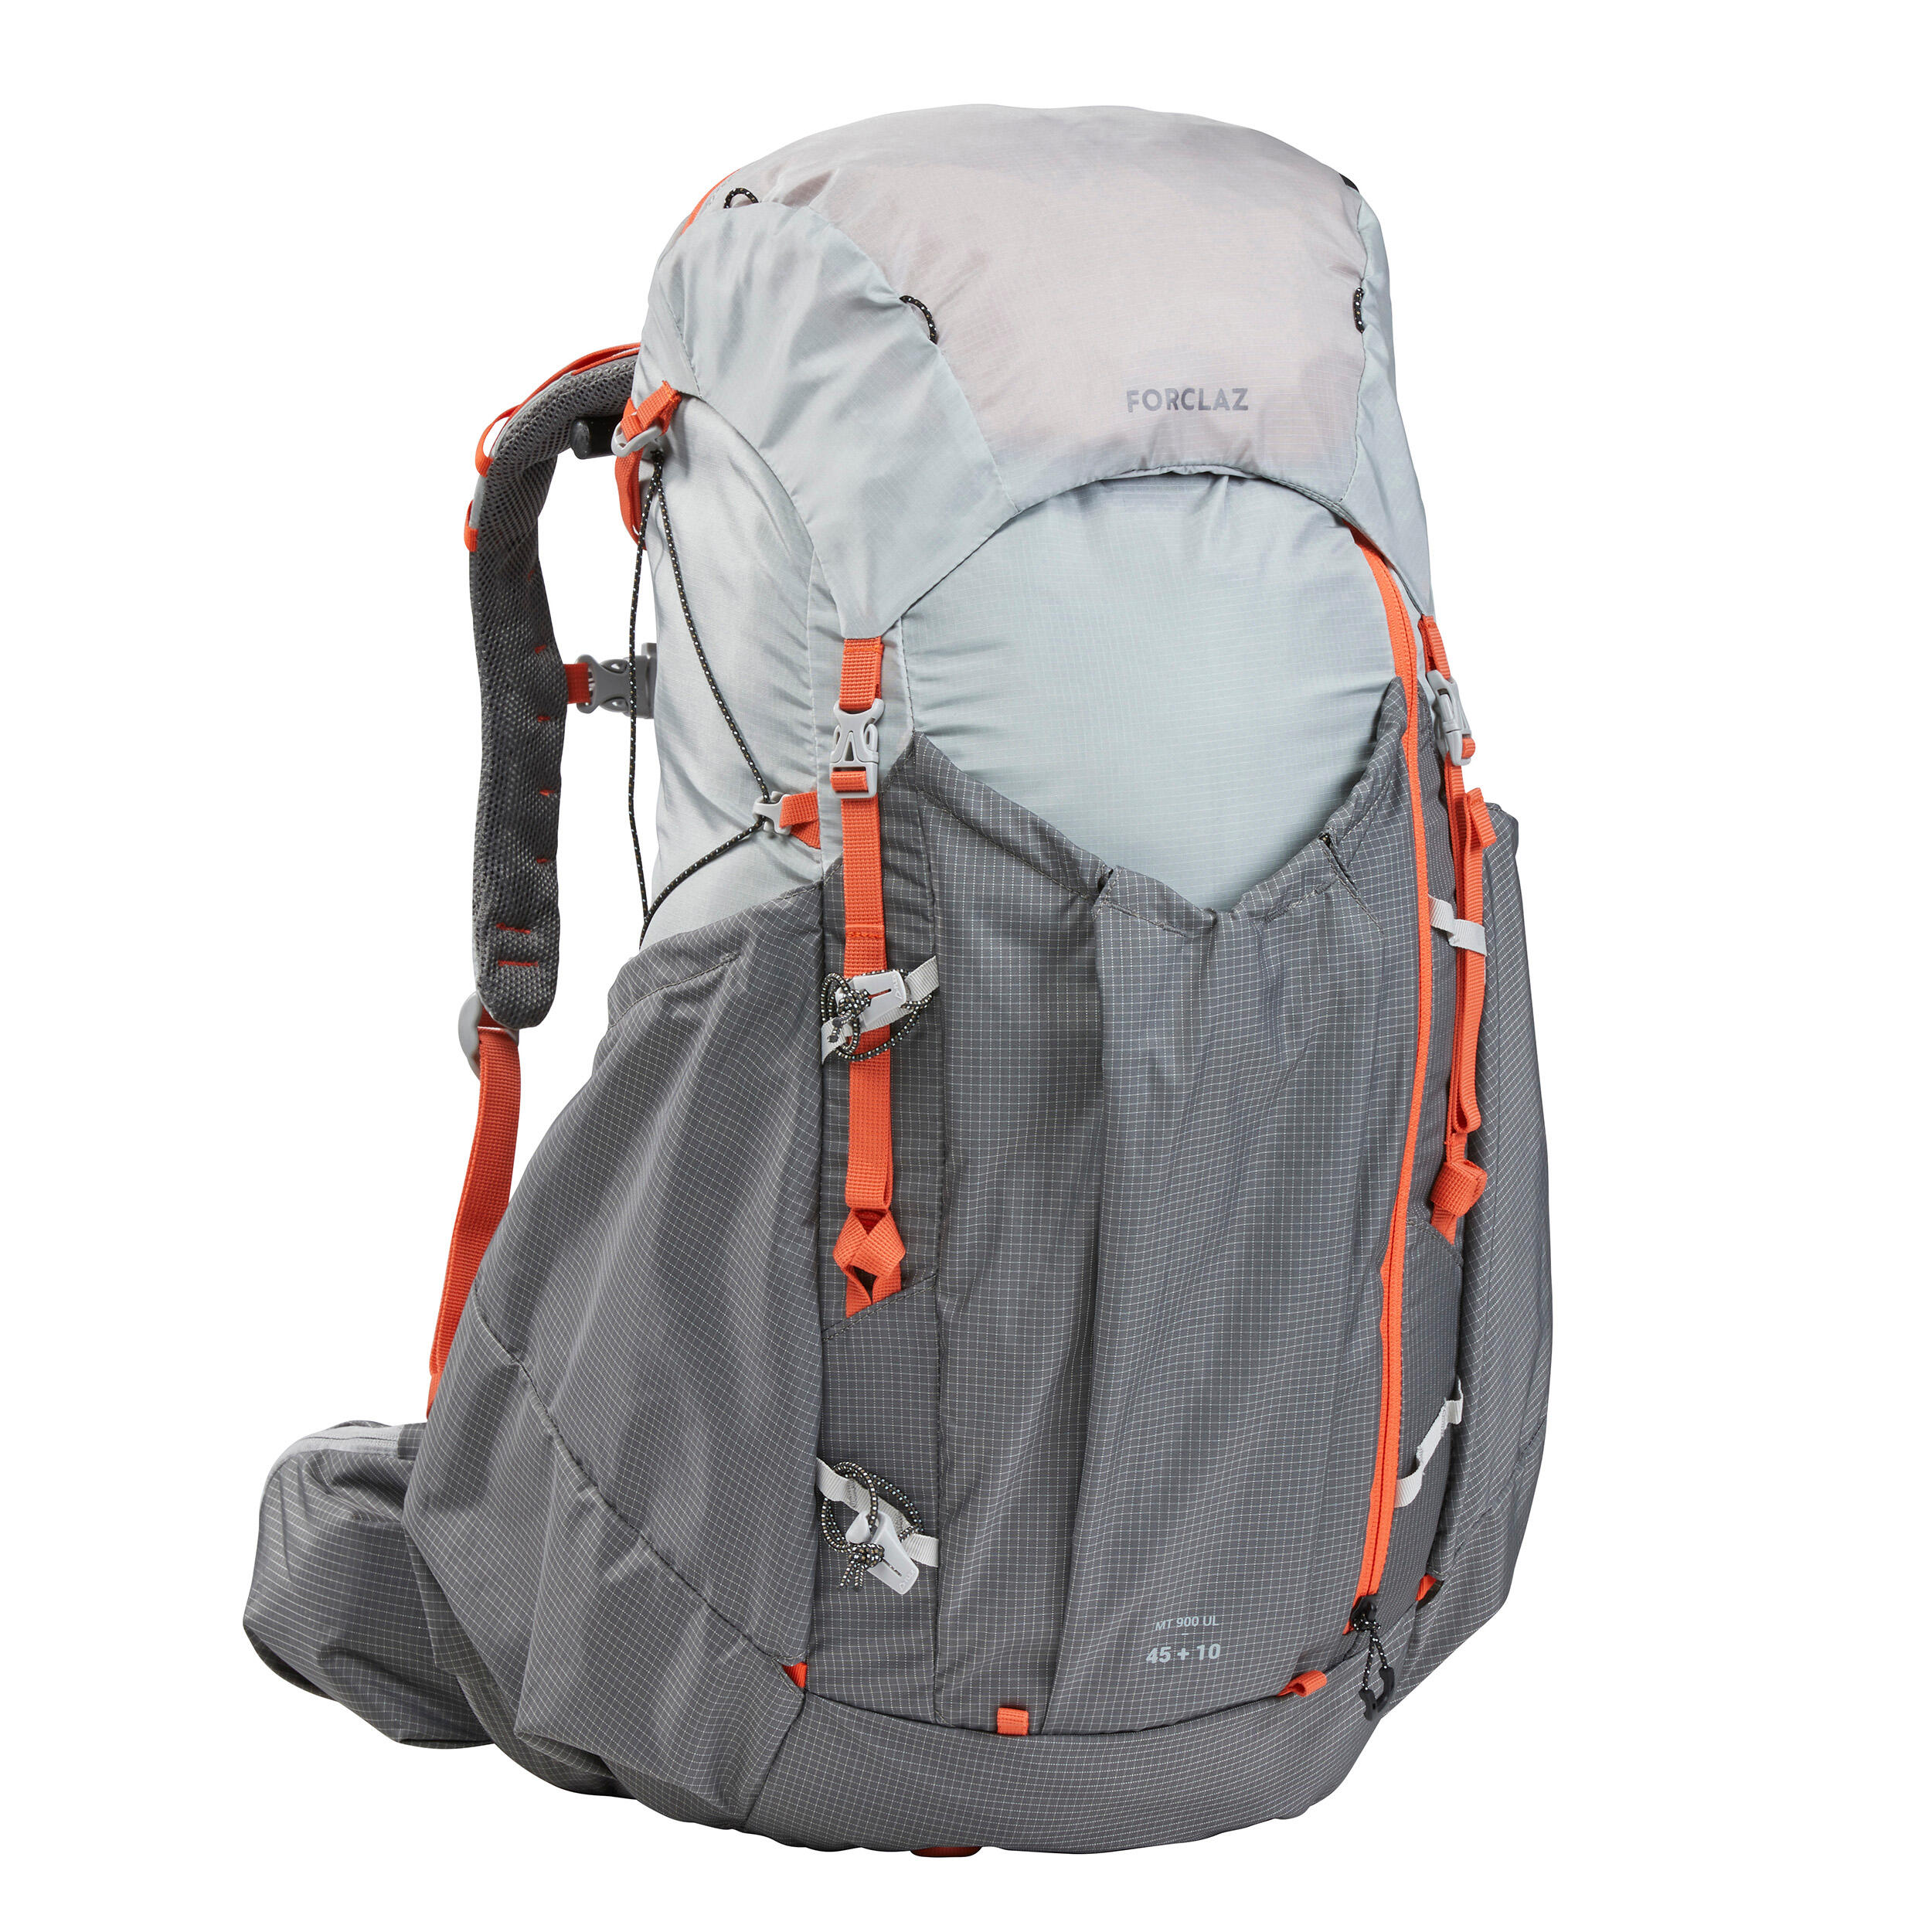 Plecak trekkingowy damski Forclaz MT900 45+10 l FORCLAZ